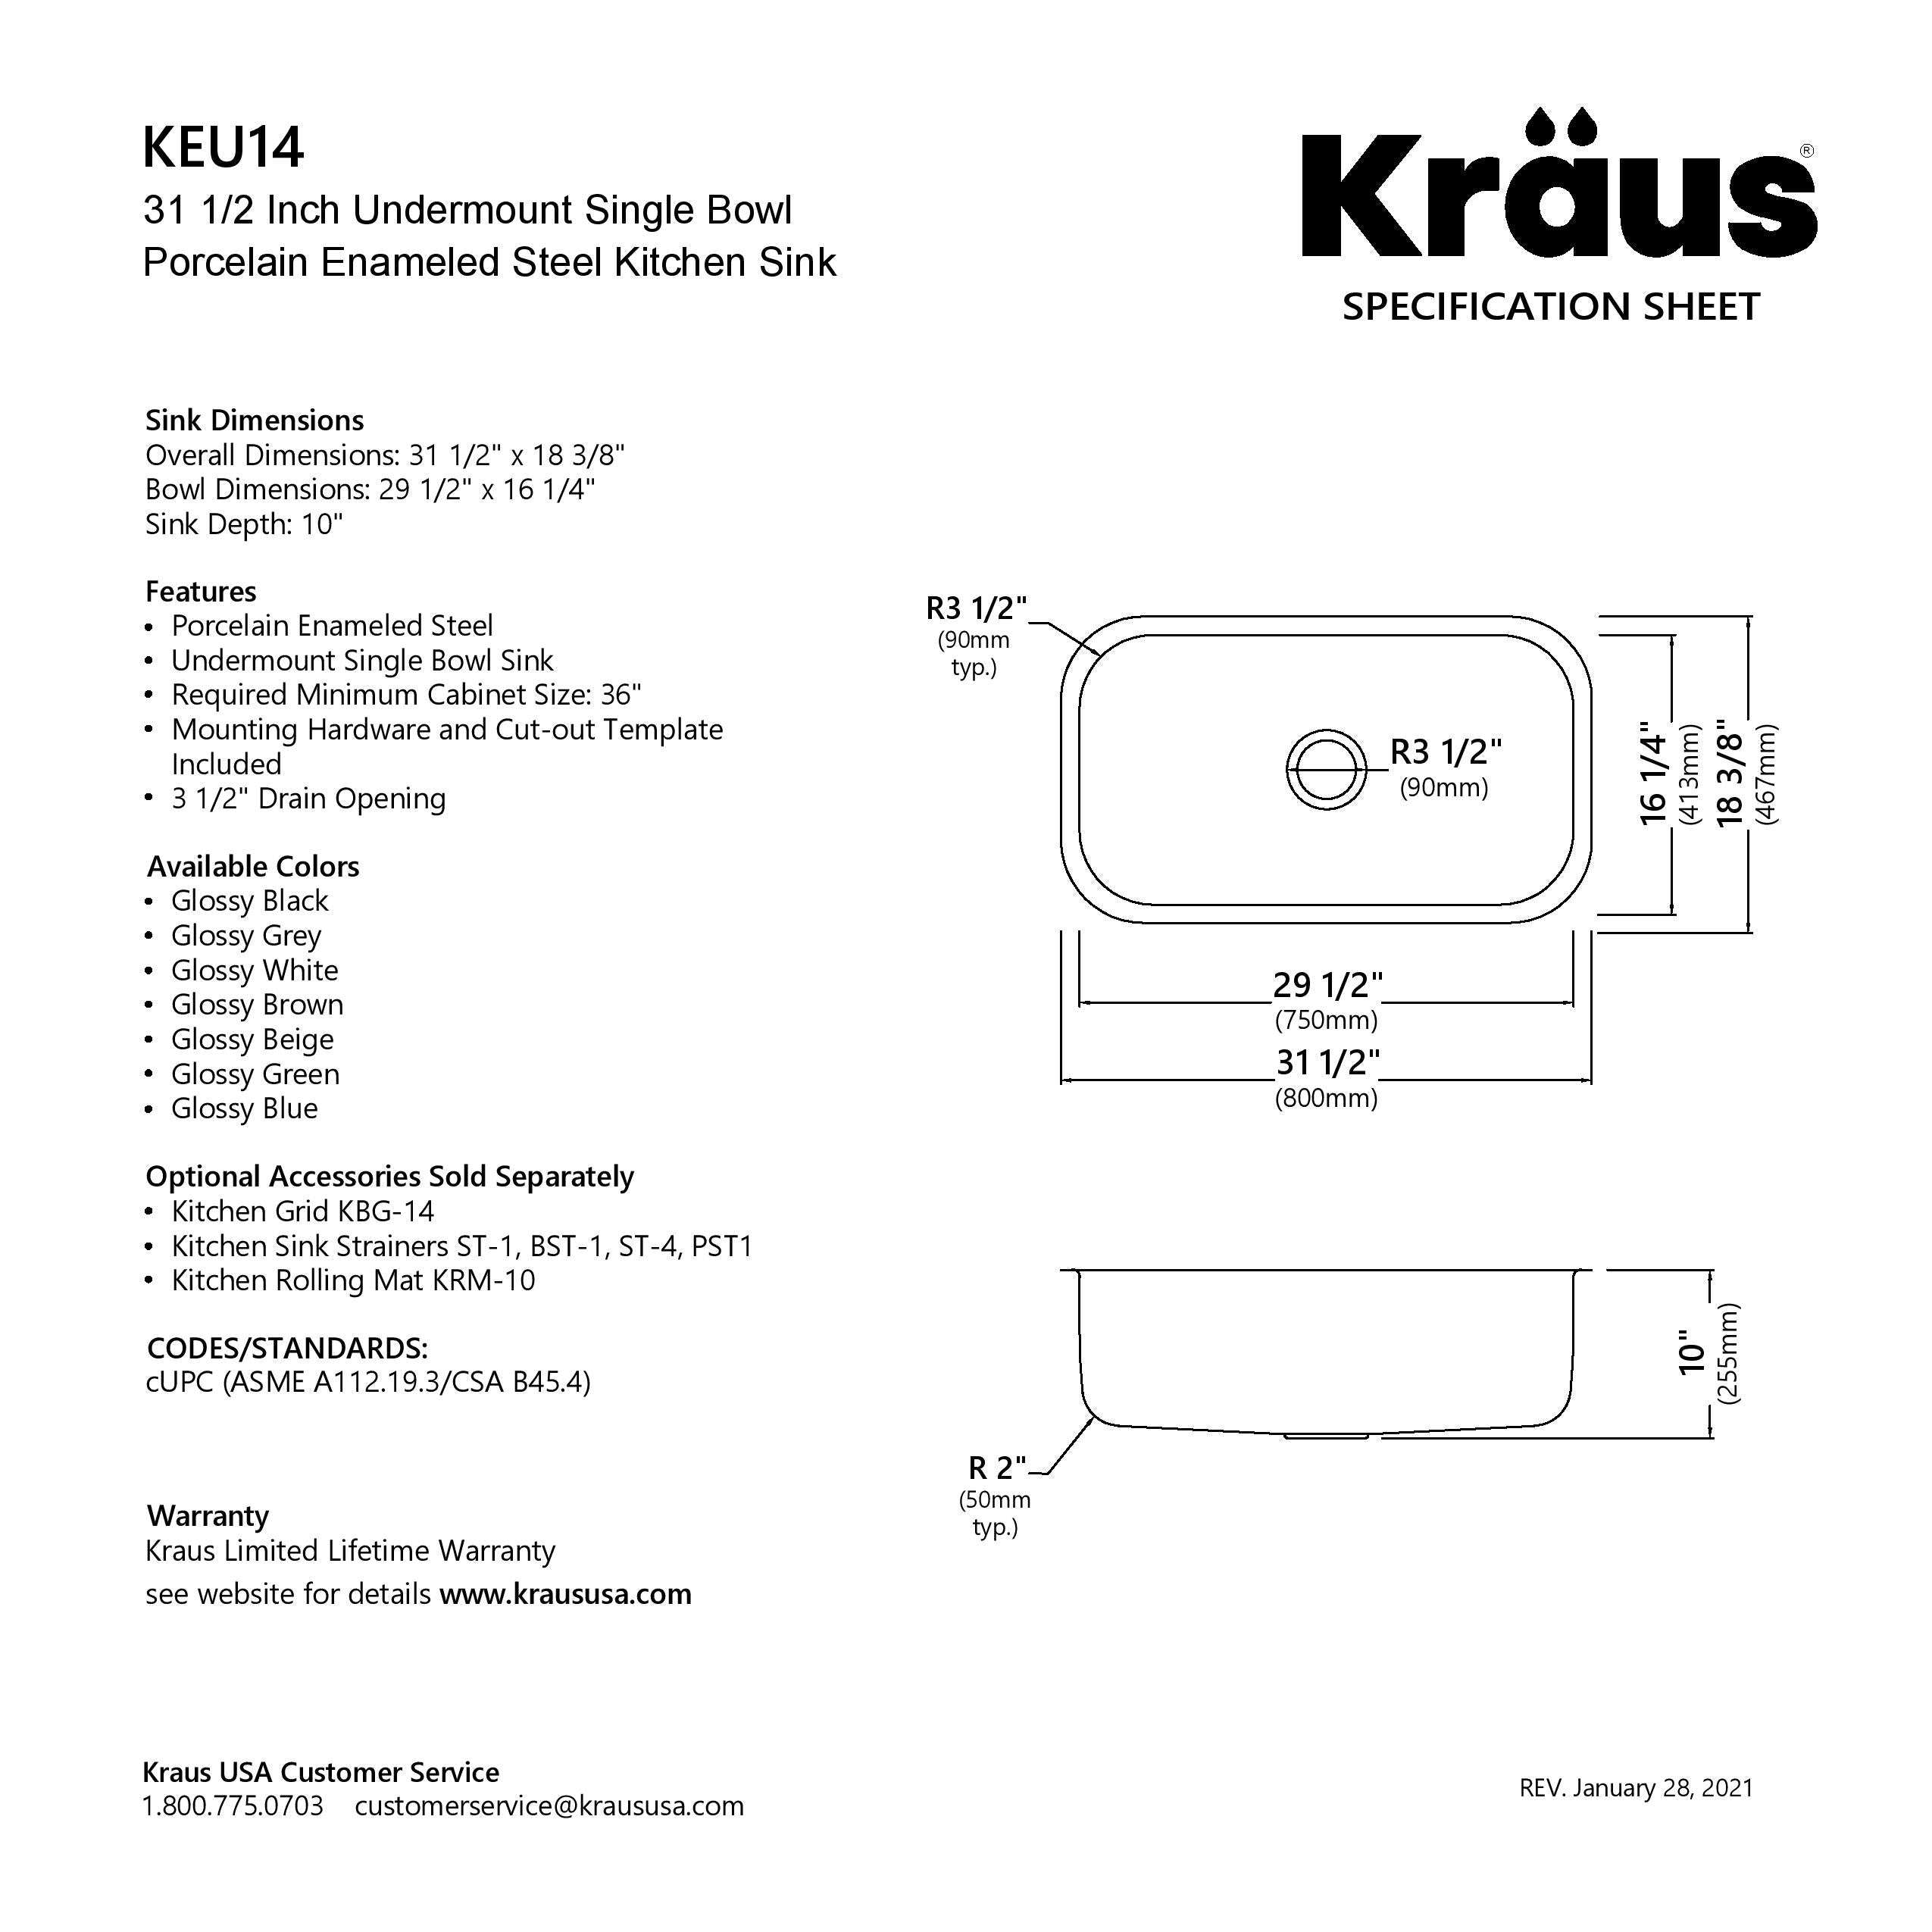 Kraus KEU-14WHITE Pintura 16 Gauge Undermount Single Bowl Enameled Stainless Steel Kitchen Sink, 31 2-inch, White - 3